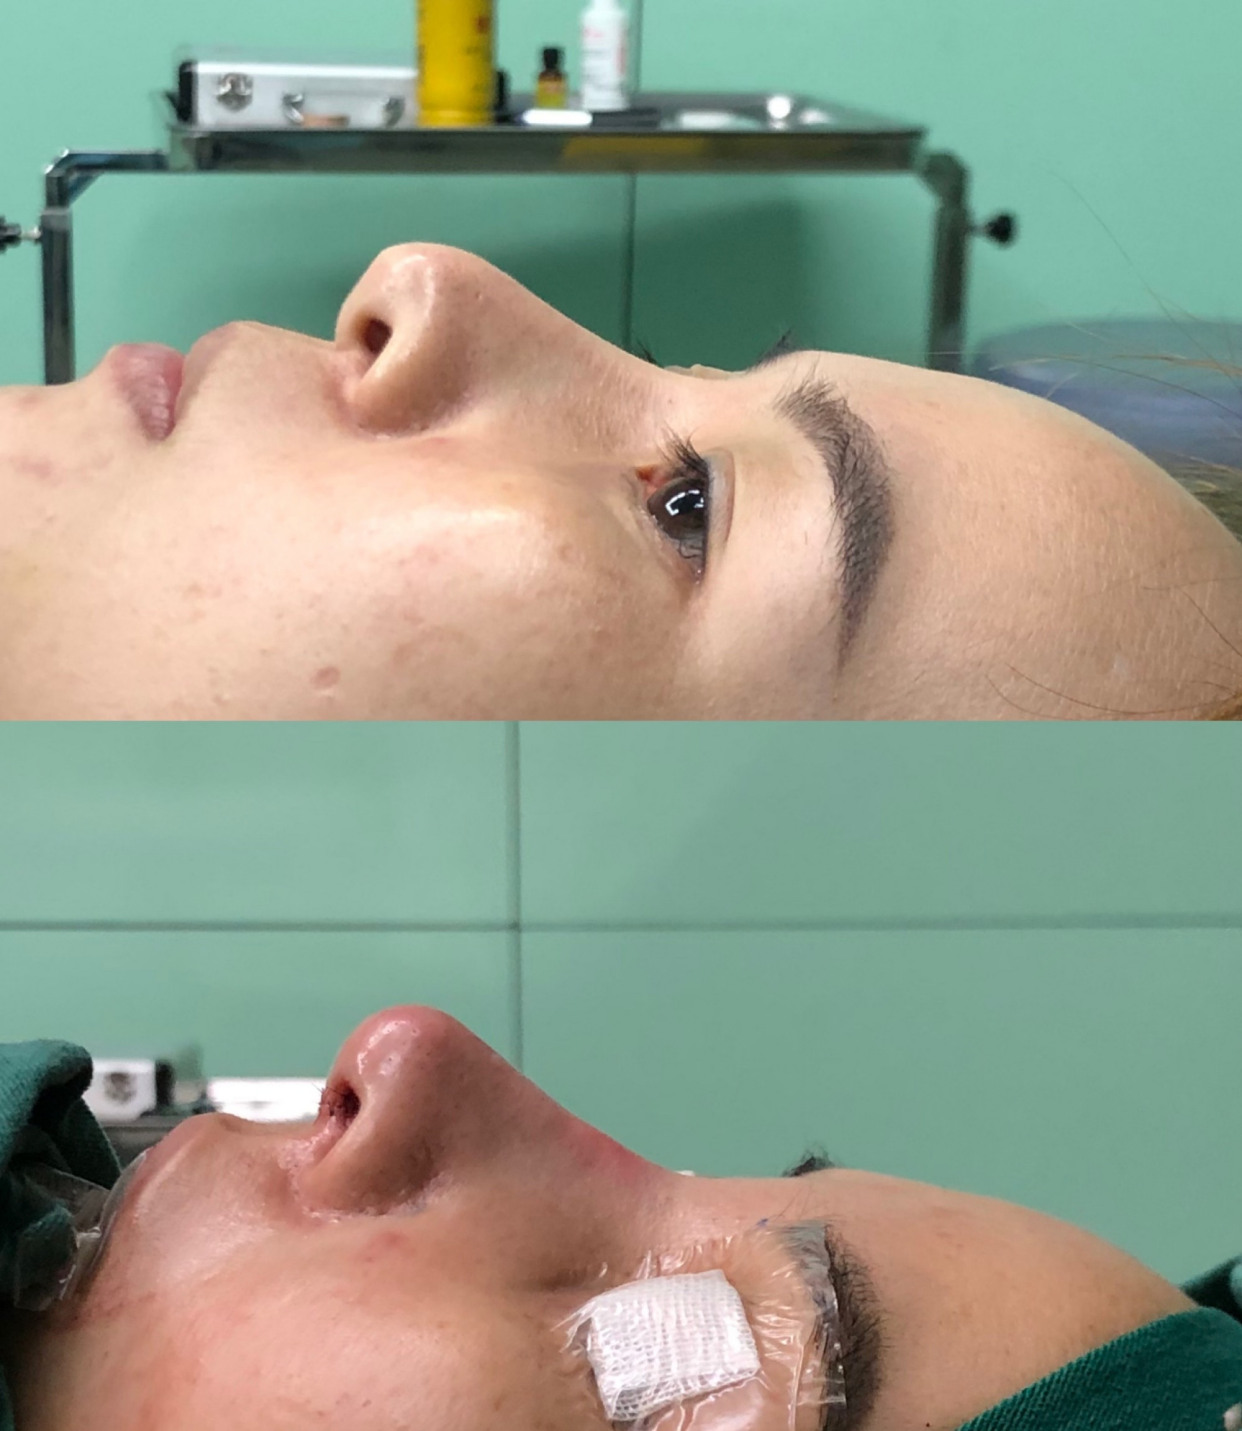 一个修复的鼻子,术前假体快顶穿鼻头